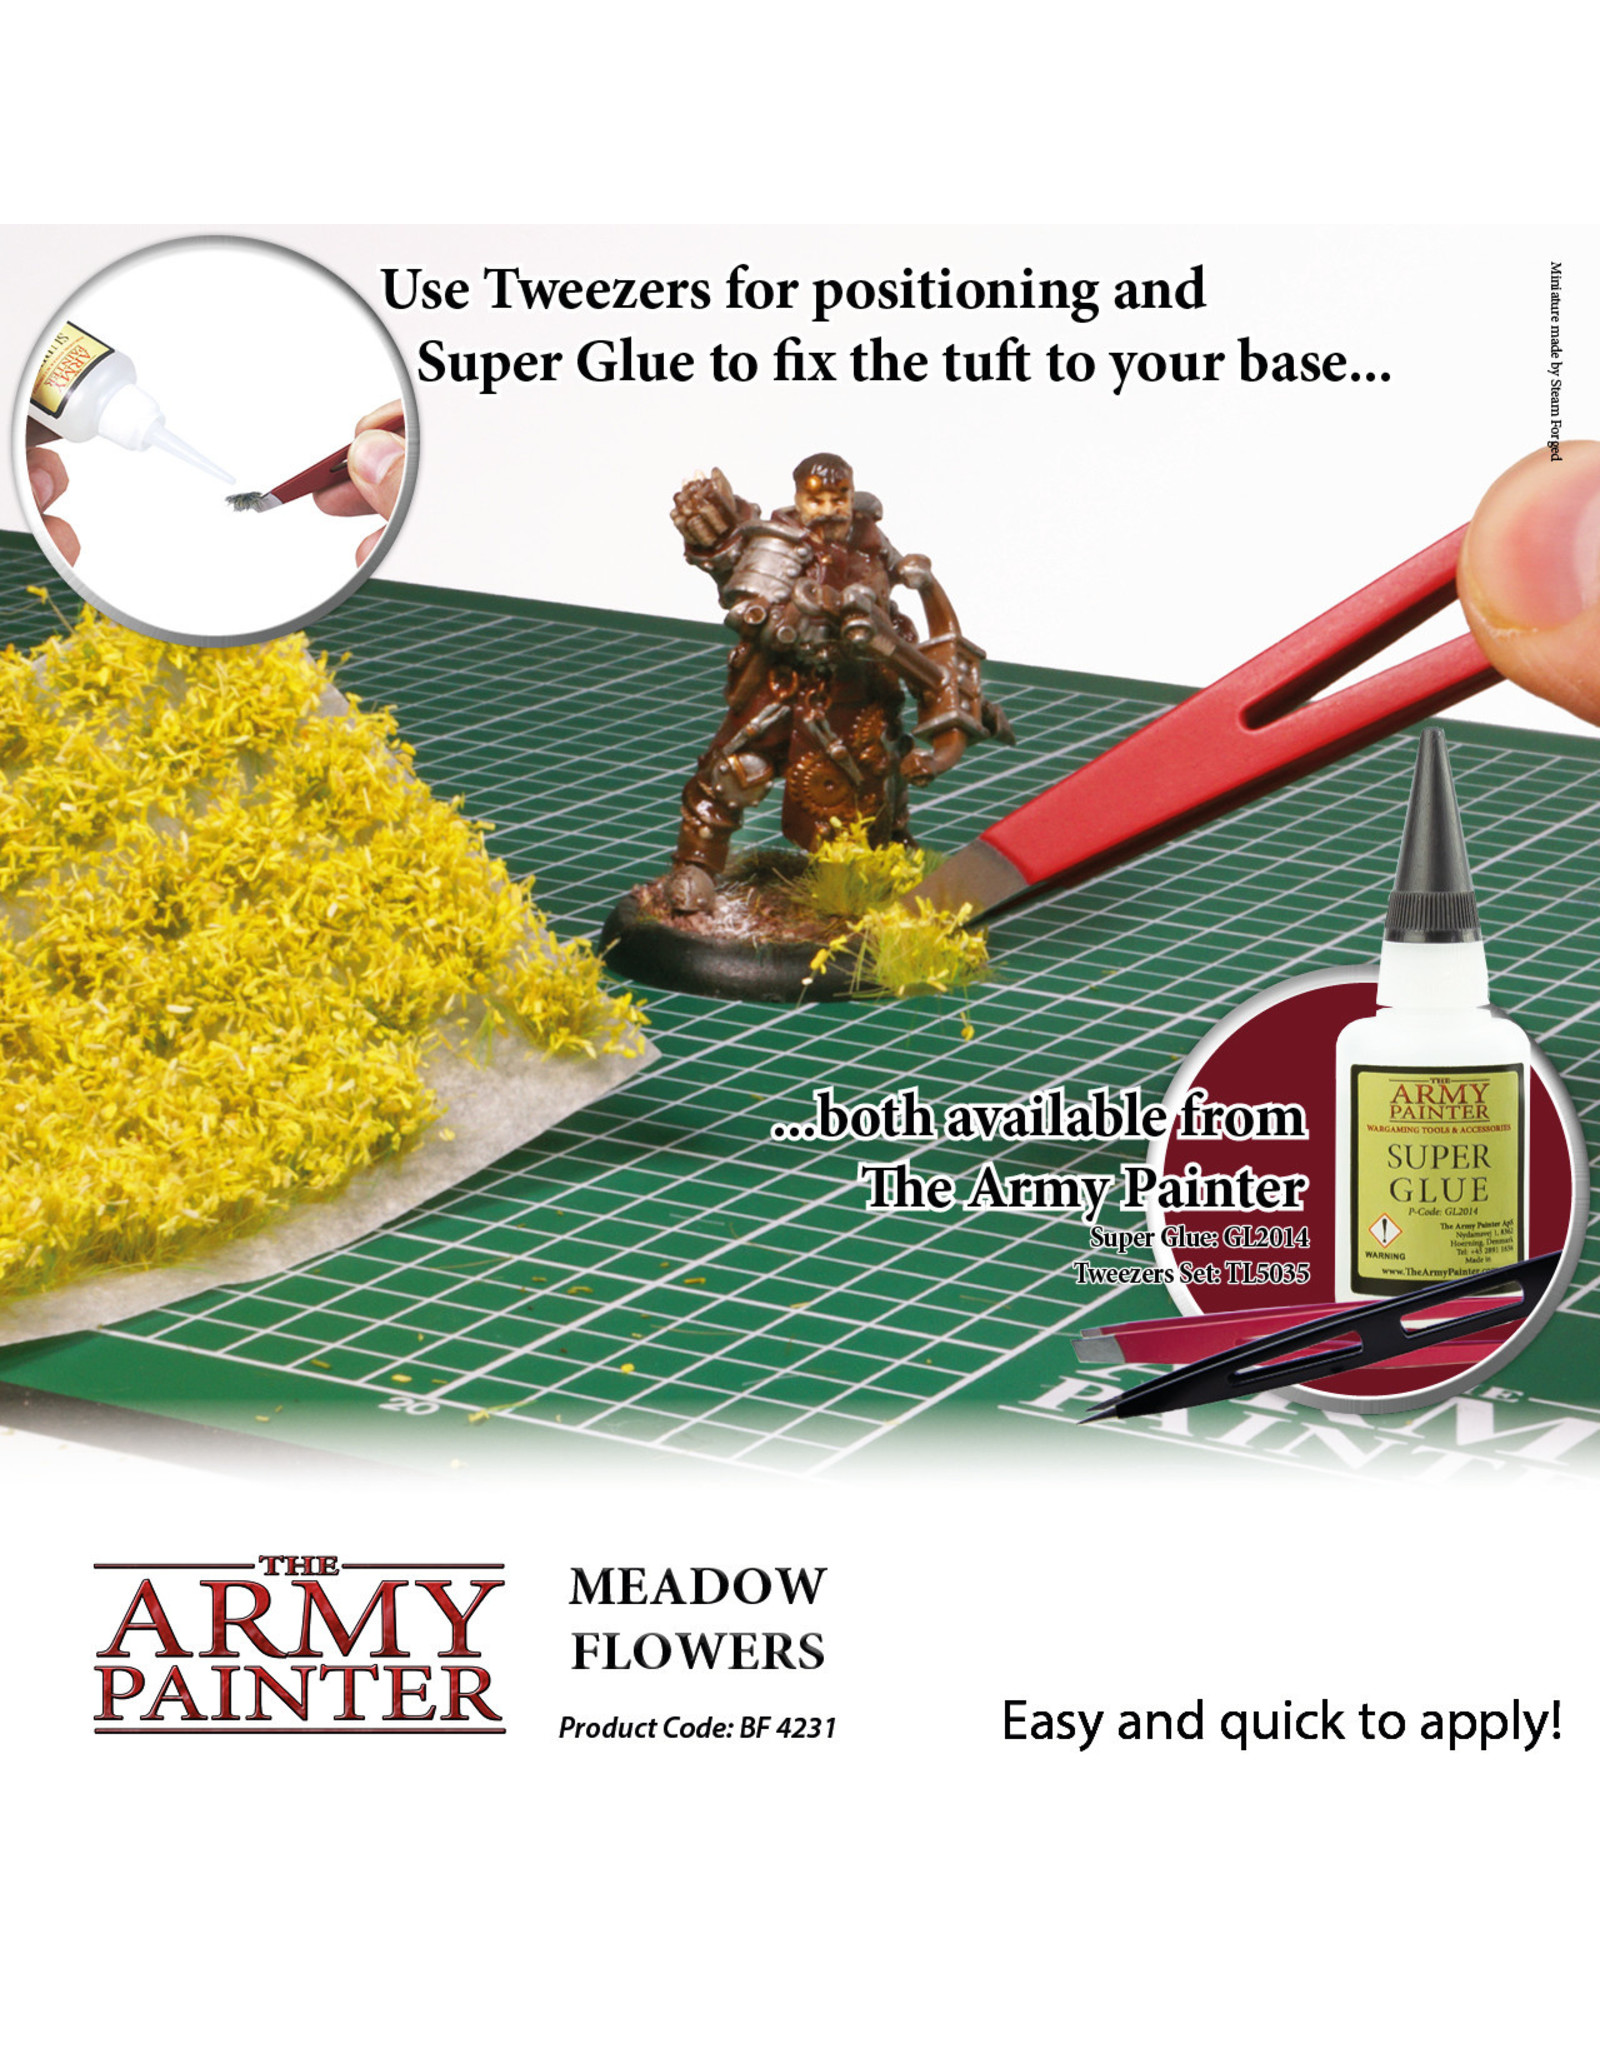 Army Painter Battlefields Meadow Flowers